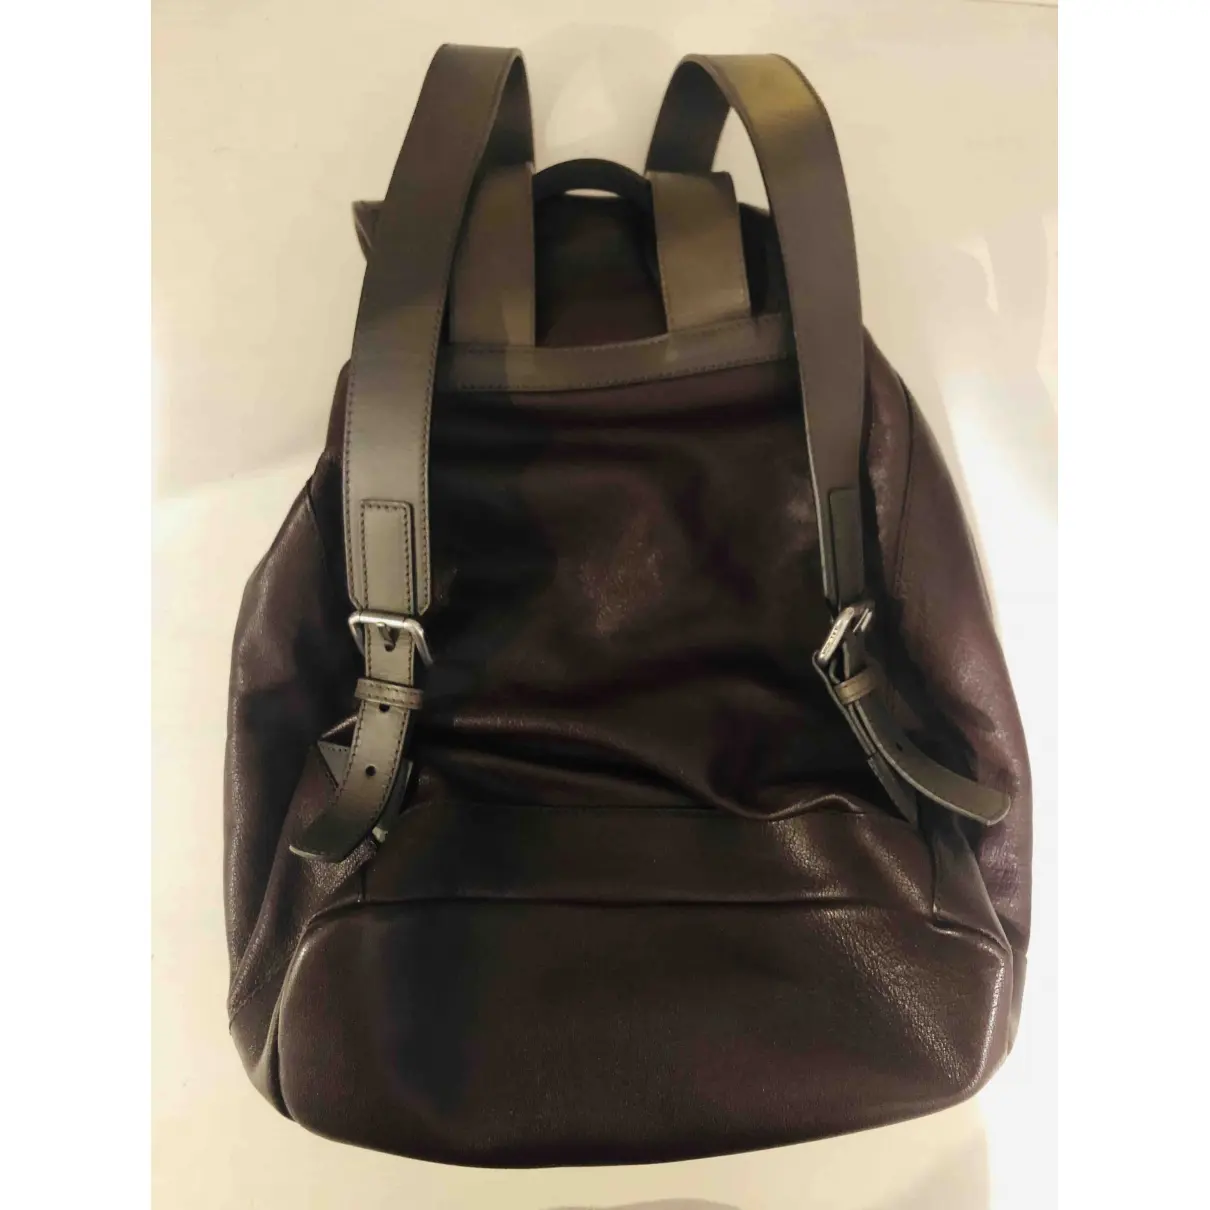 Leather bag Giorgio Armani